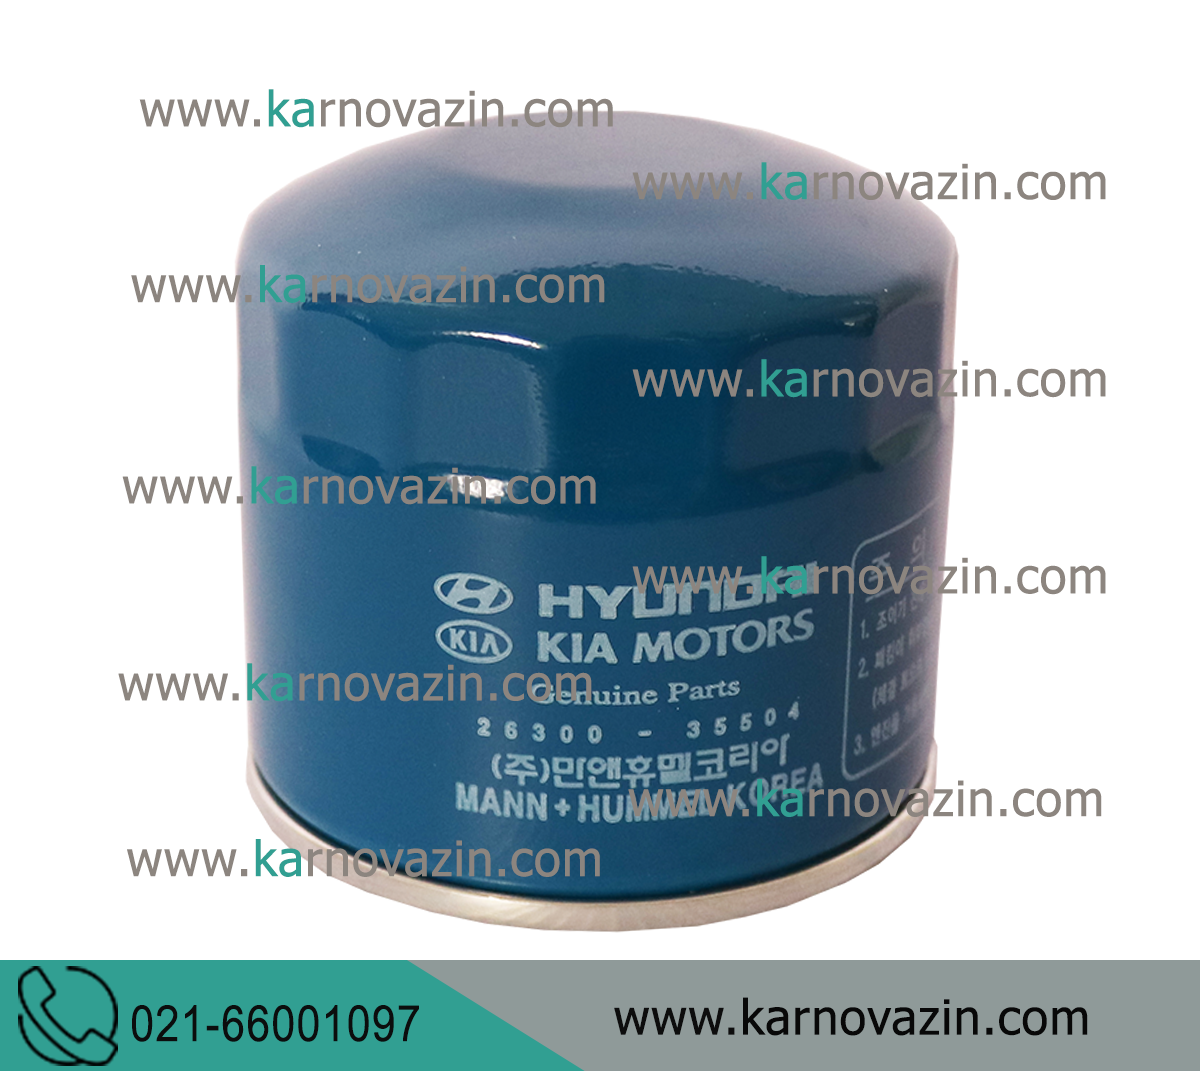 Kia oil filter